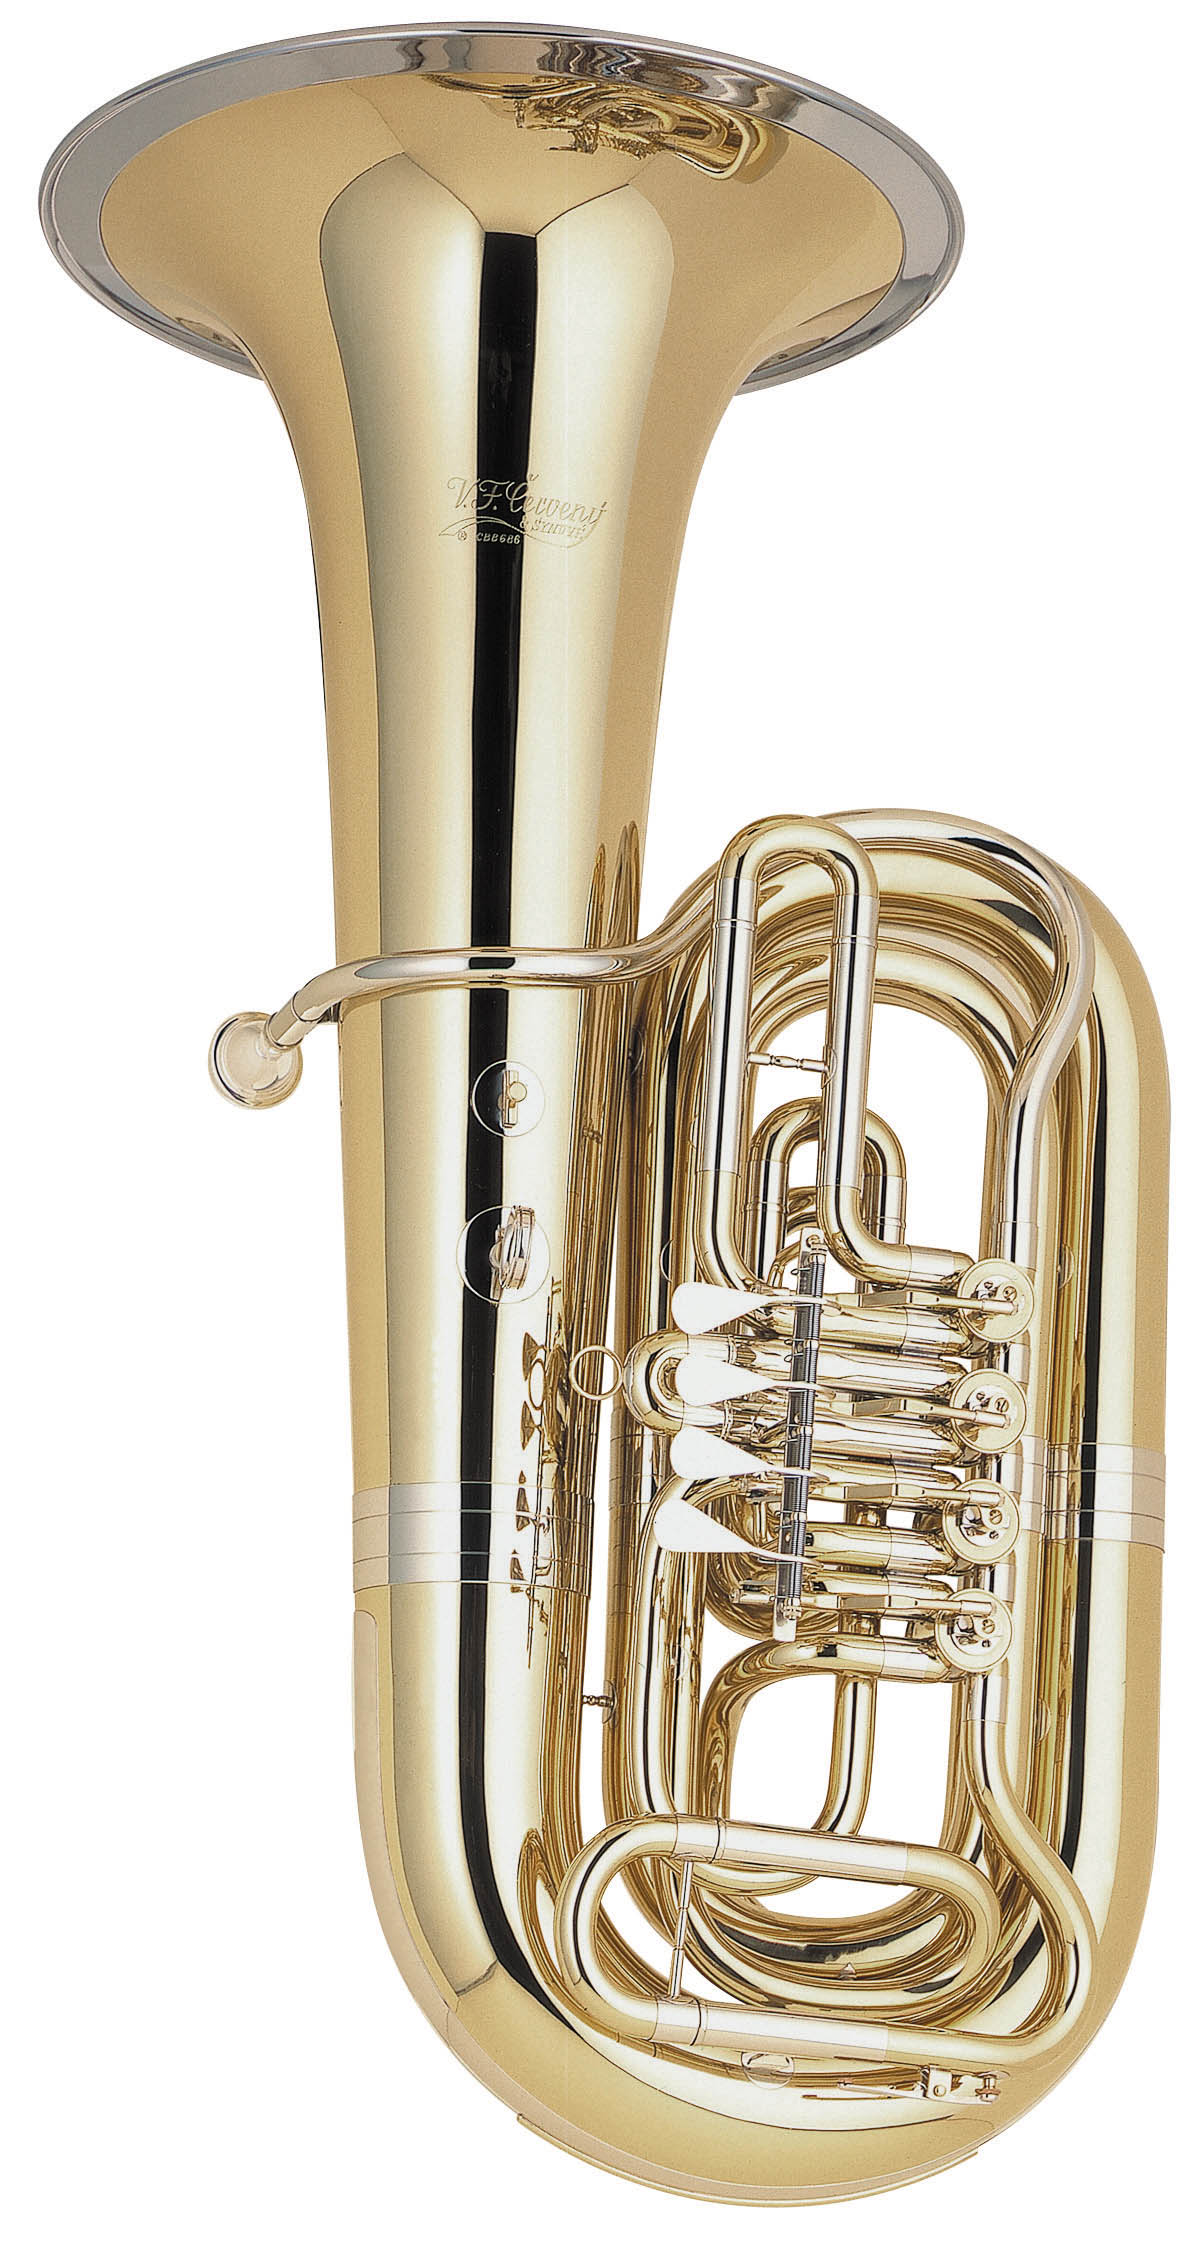 V. F. Červený B tuba CBB 686-4R